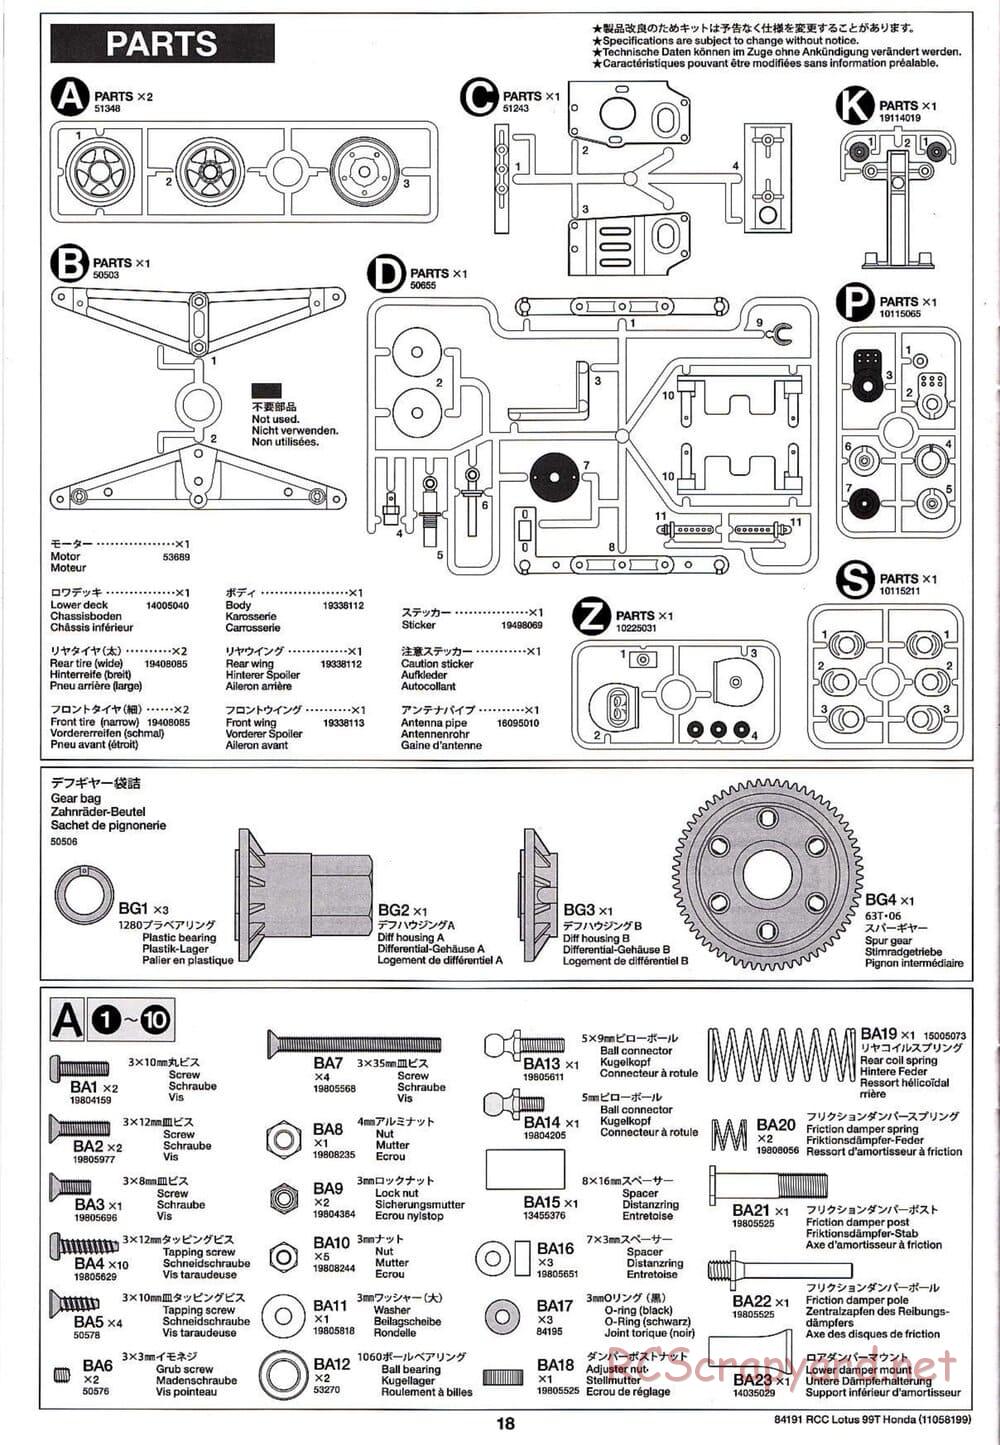 Tamiya - Team Lotus 99T Honda - F103 Chassis - Manual - Page 18